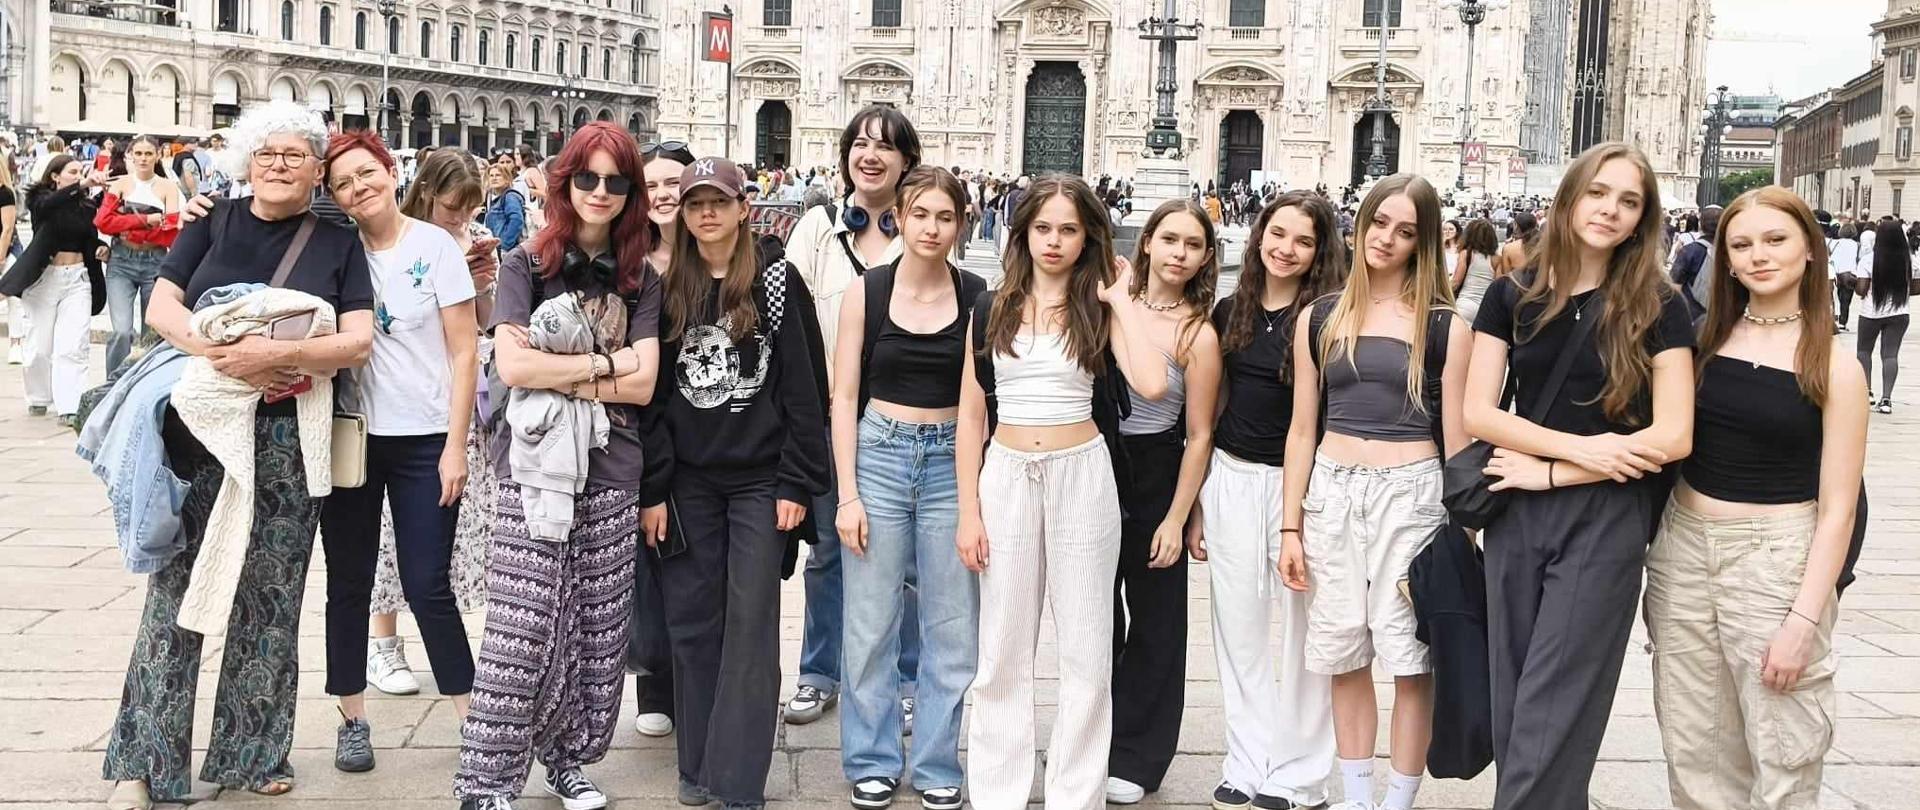 Grupa dziewcząt pozuje do zdjęcia , w tle katedra Duomo.